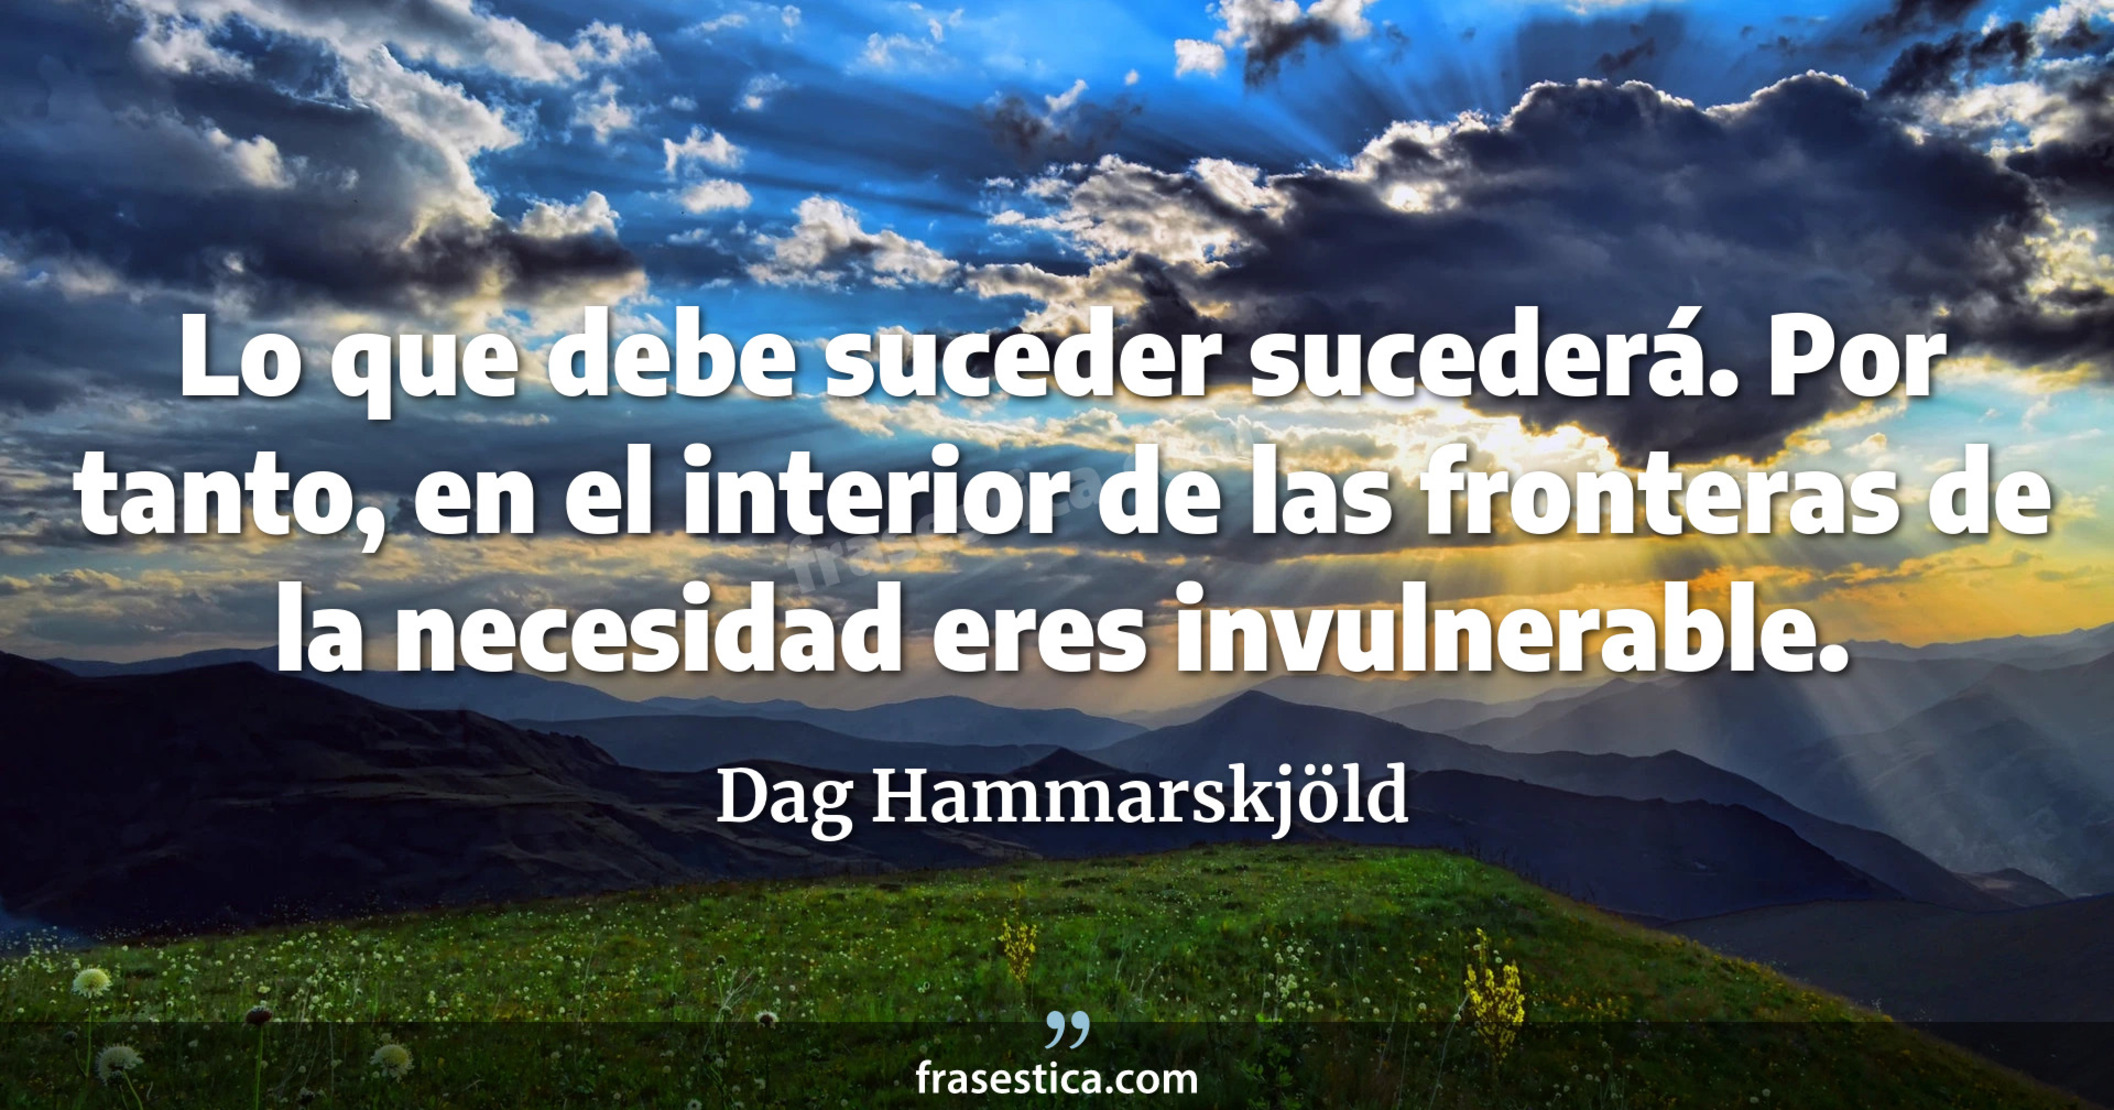 Lo que debe suceder sucederá. Por tanto, en el interior de las fronteras de la necesidad eres invulnerable. - Dag Hammarskjöld